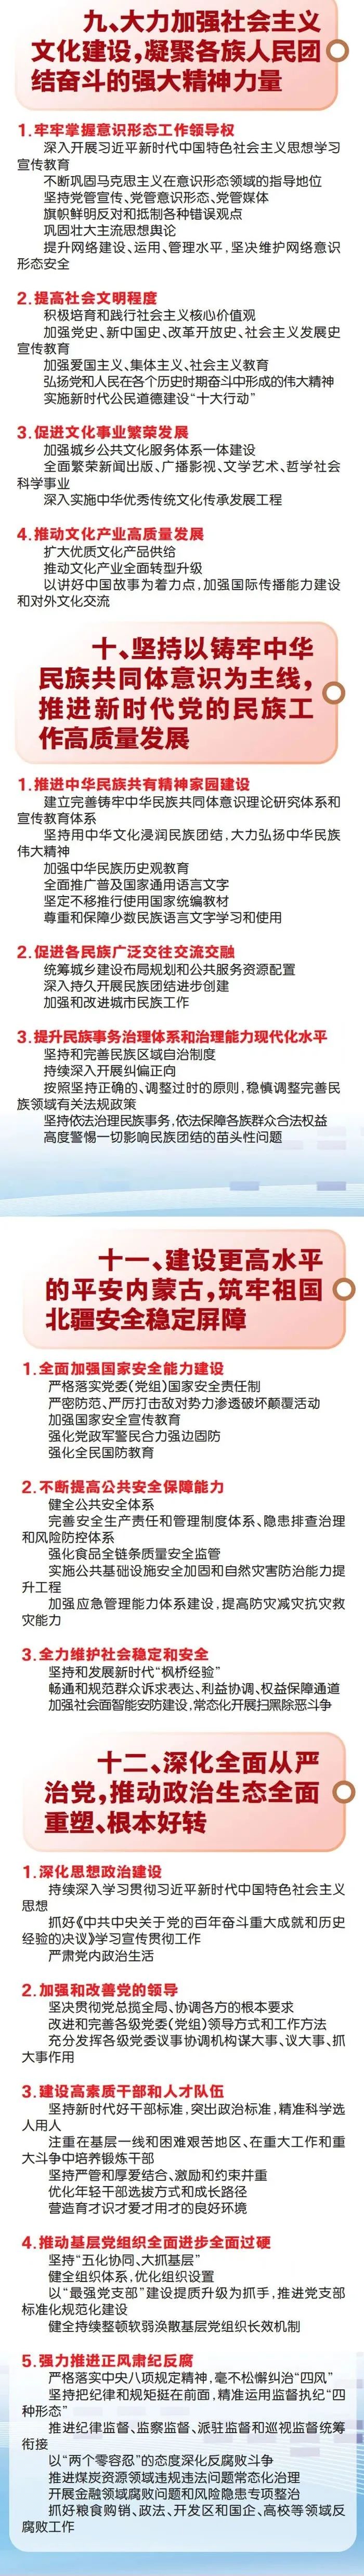 图解丨自治区第十一次党代会报告重点来了 (http://www.lyjimeng.com/) 国内 第6张